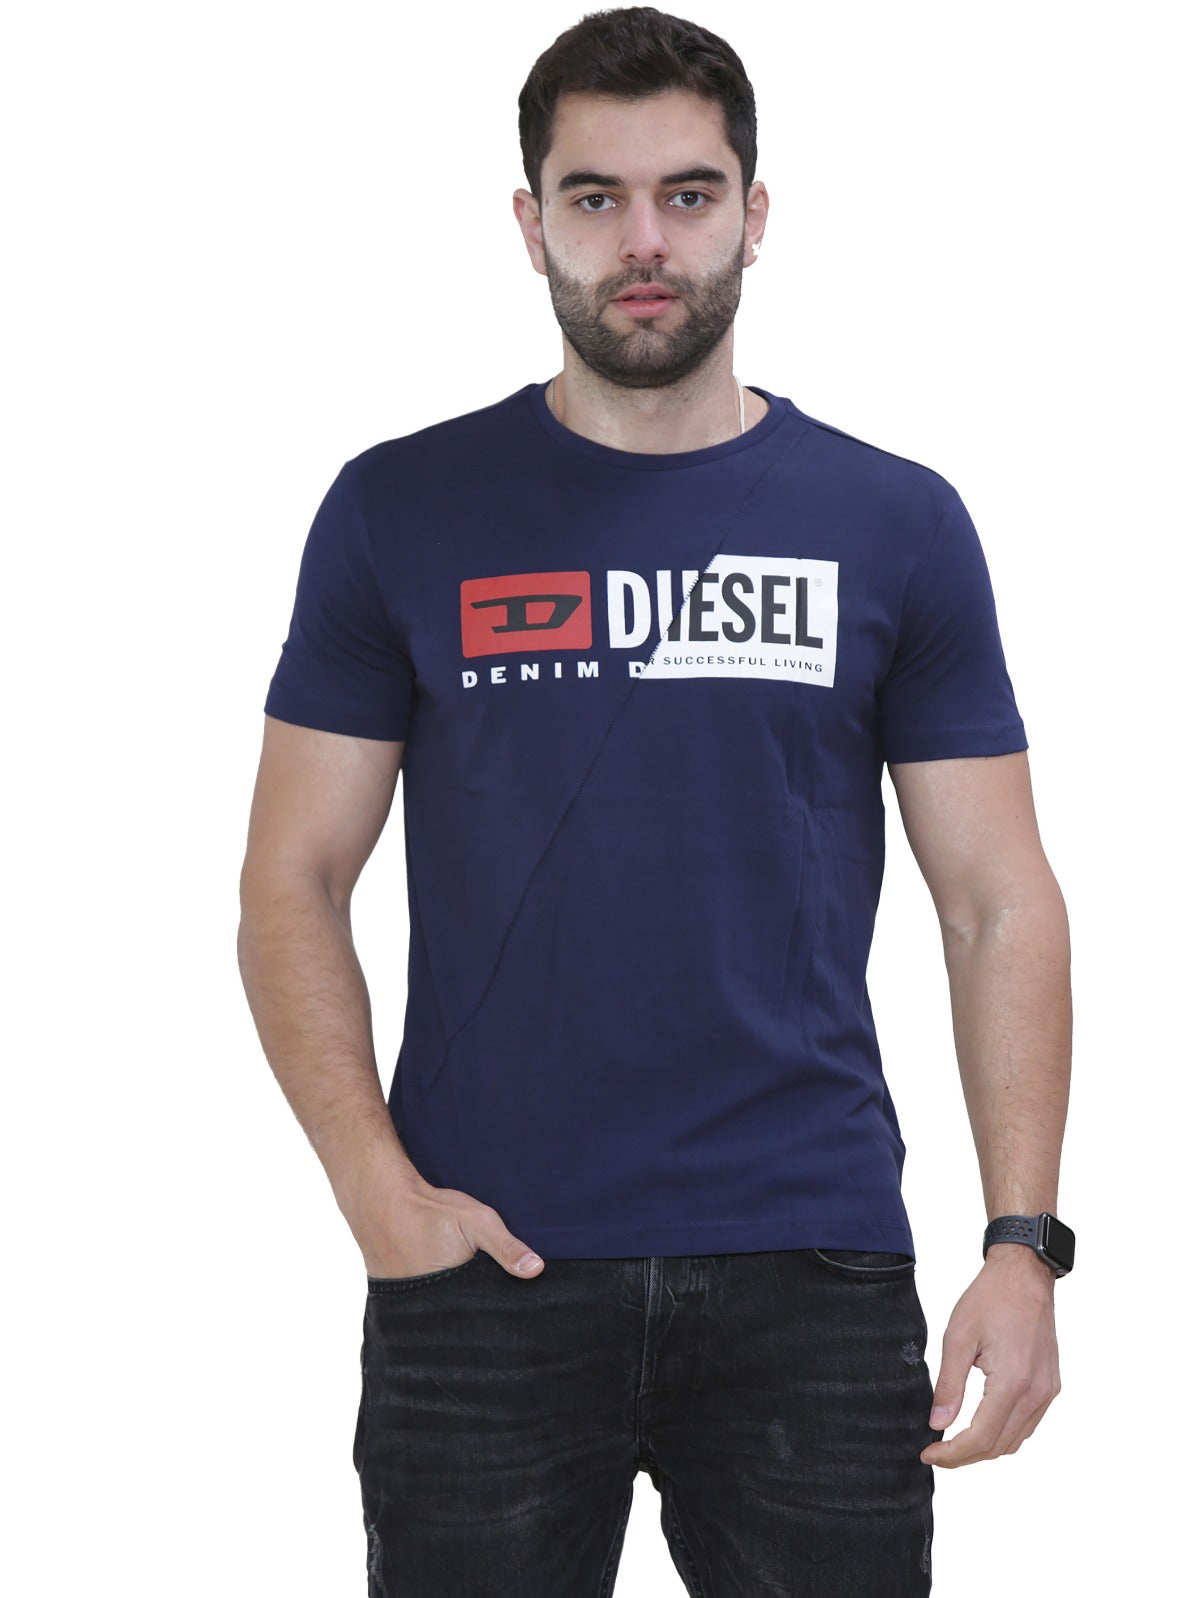 DIESEL CUTY Mens Short Sleeve Printed Deisel Cuty T-shirt DIESEL RAWDENIM